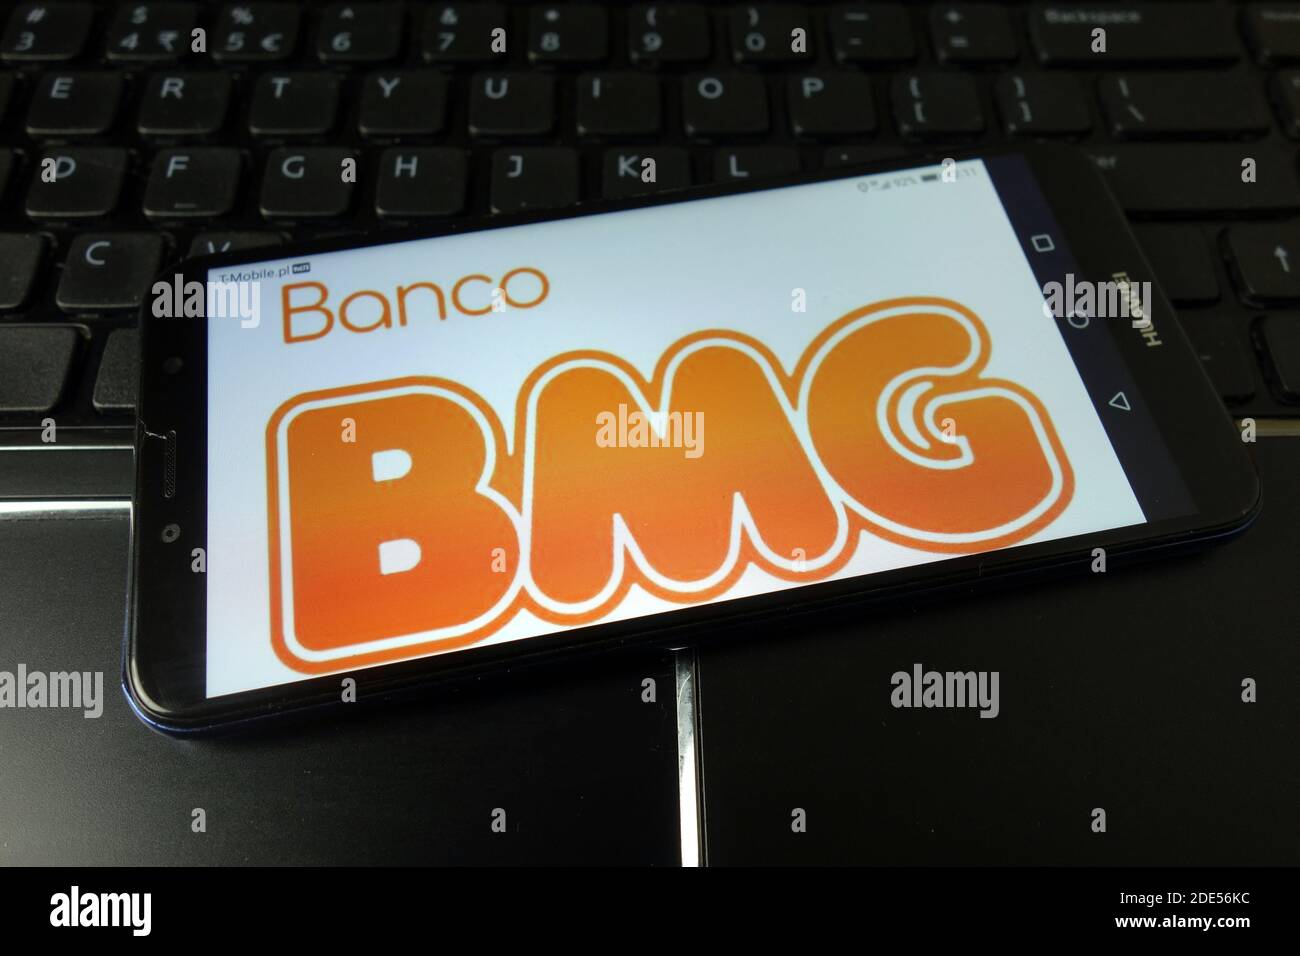 KONSKIE, POLEN - 11. Januar 2020: Das BMG-Logo der Banco wird auf dem Mobiltelefon angezeigt Stockfoto